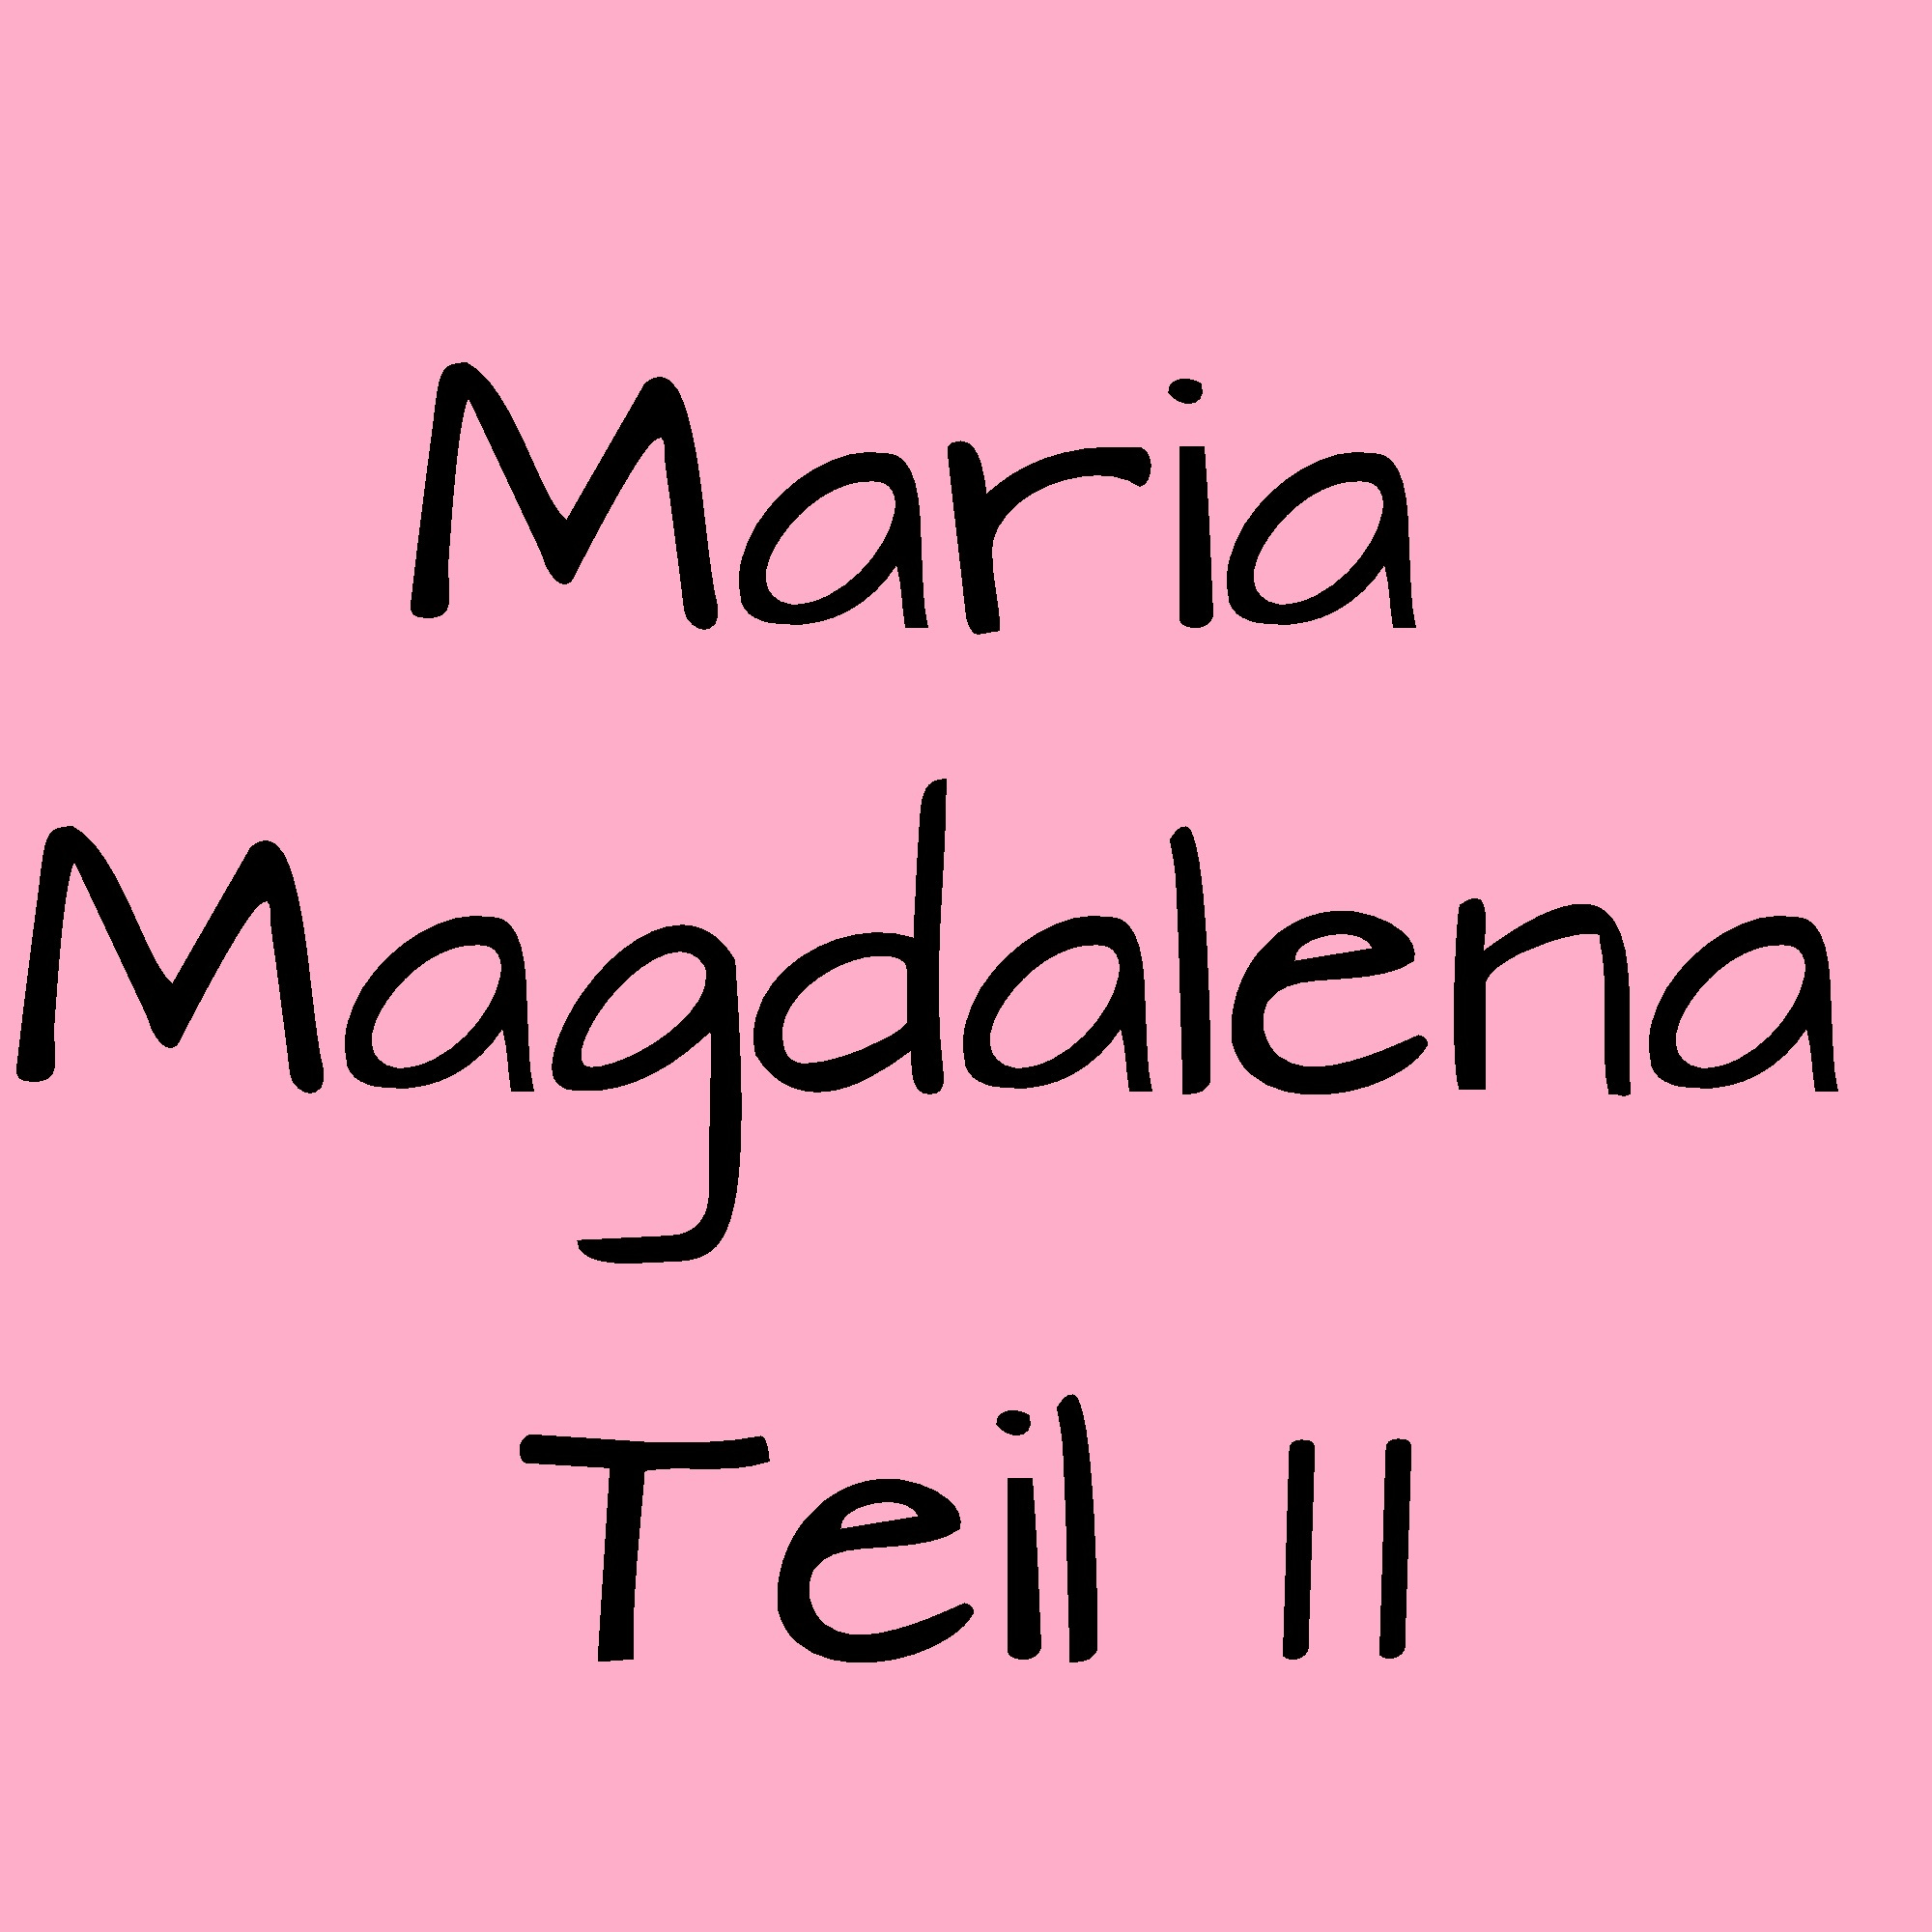 Maria Magdalena 2